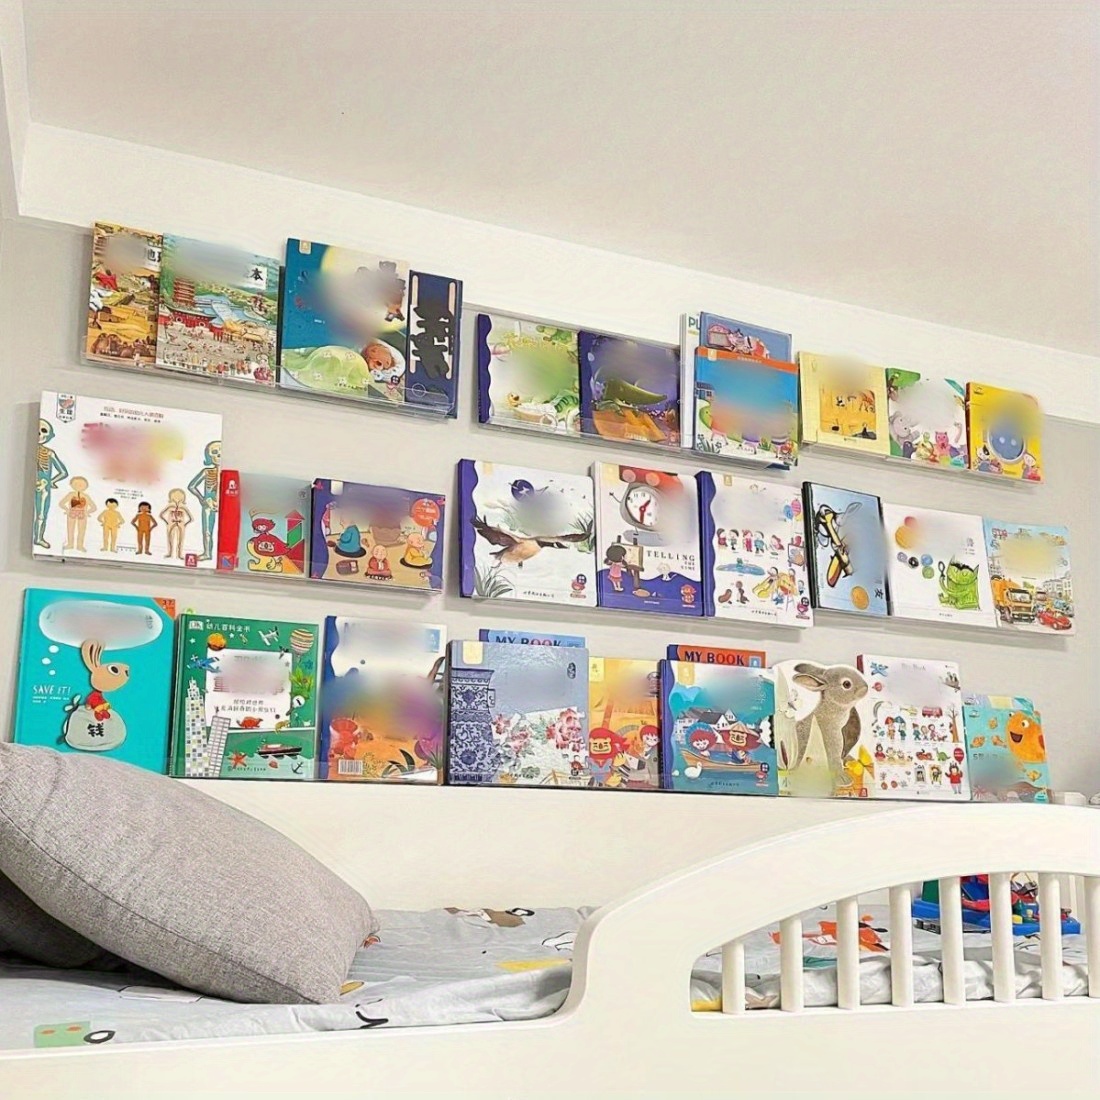 Un estante para libros montado en la pared hecho con formas geométricas.